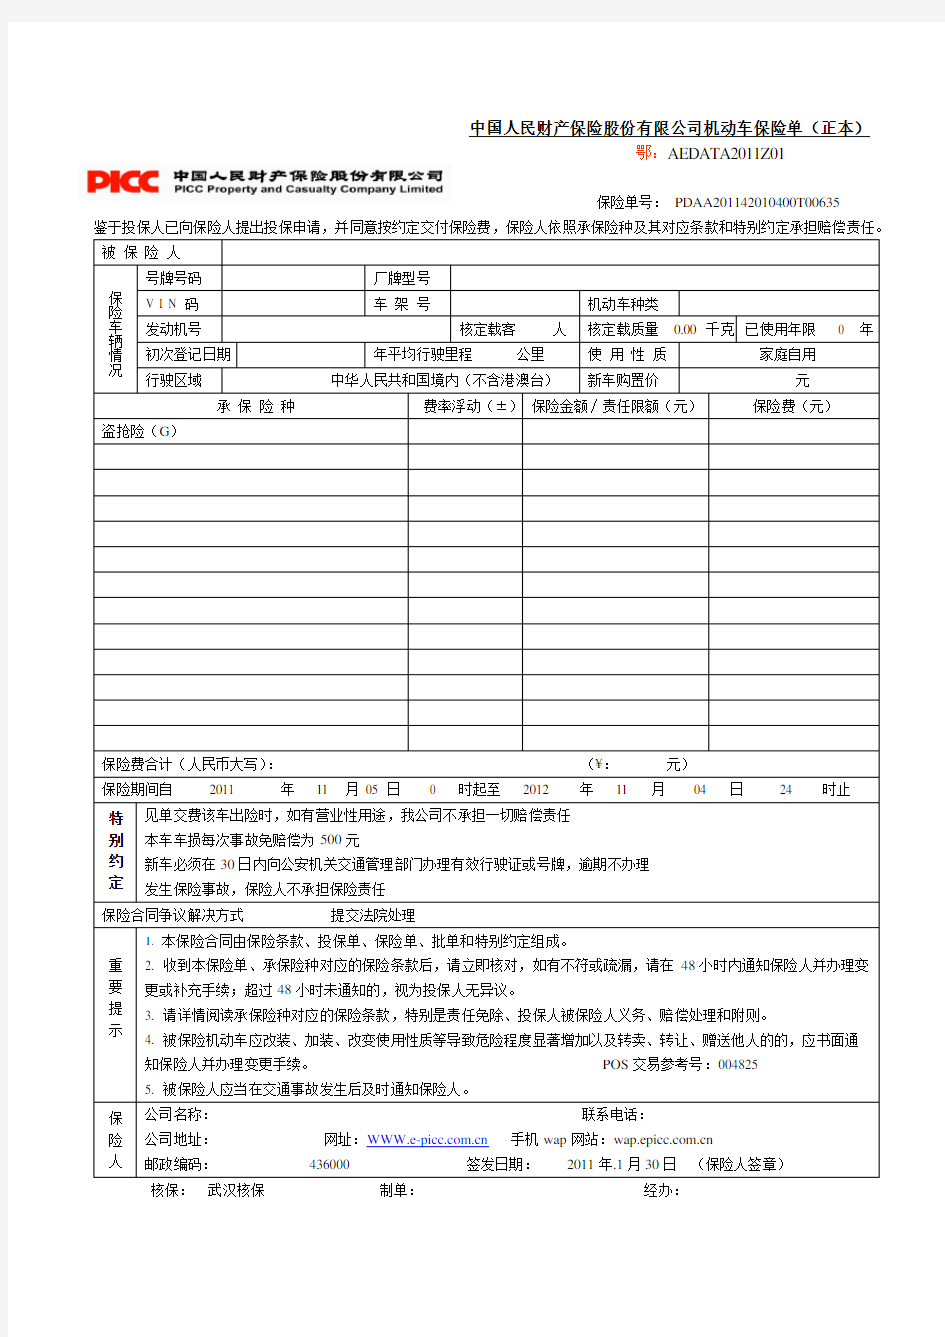 1中国人民财产保险股份有限公司机动车保险单